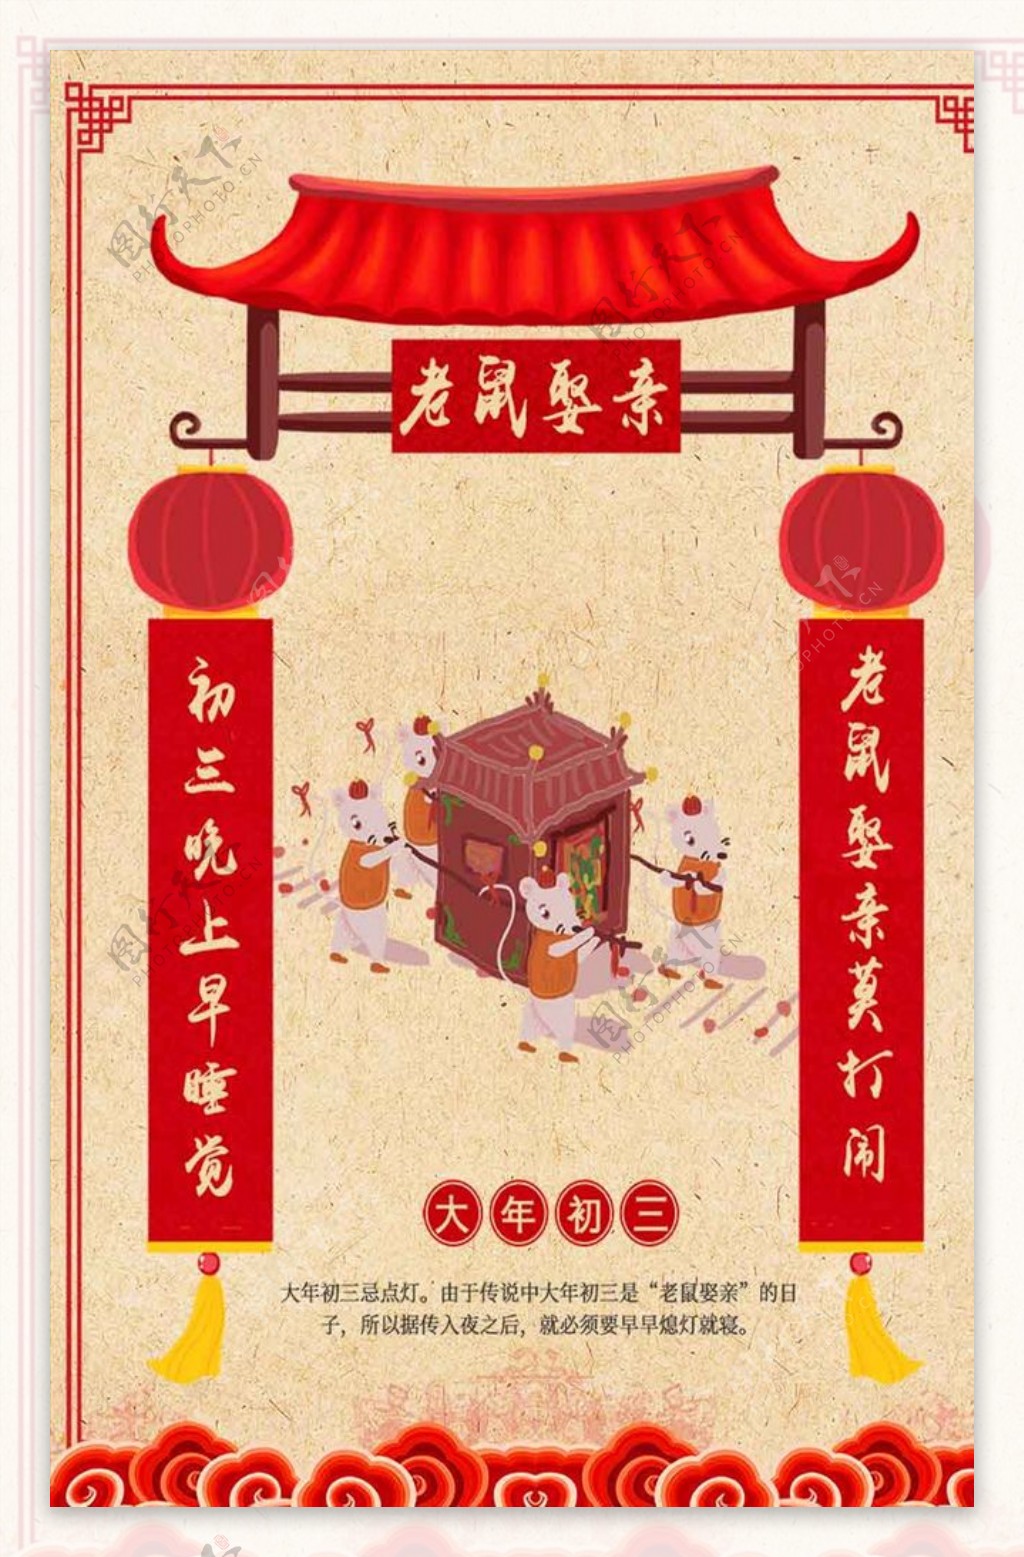 春节新年习俗初三老鼠娶亲海报